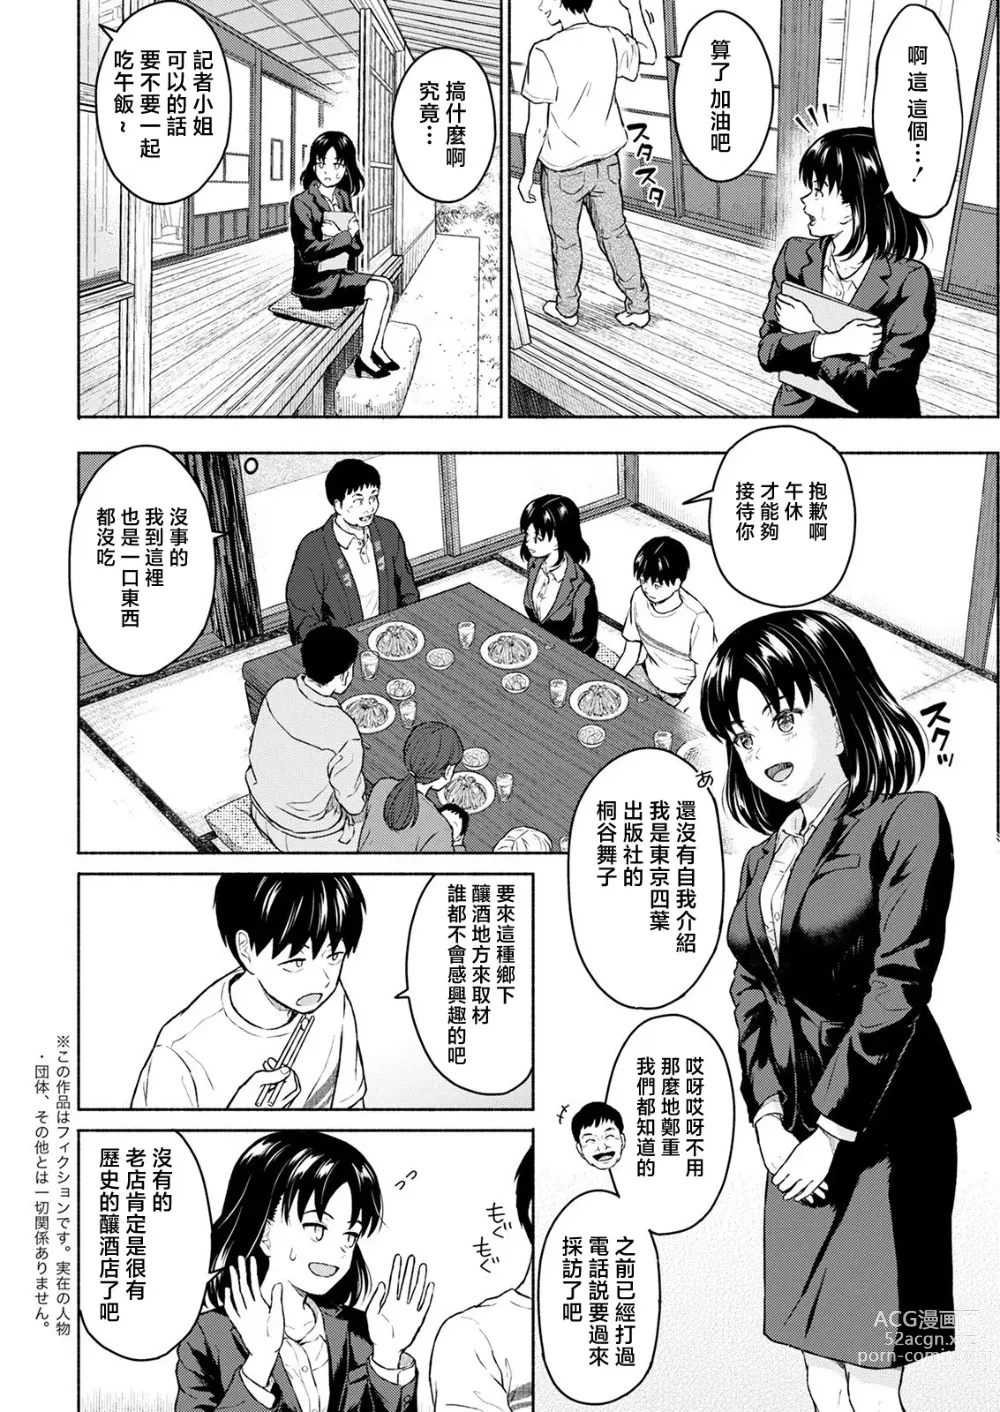 Page 6 of manga Marude Rokugatsu no Kohan o Fuku Kaze no you ni Zenpen